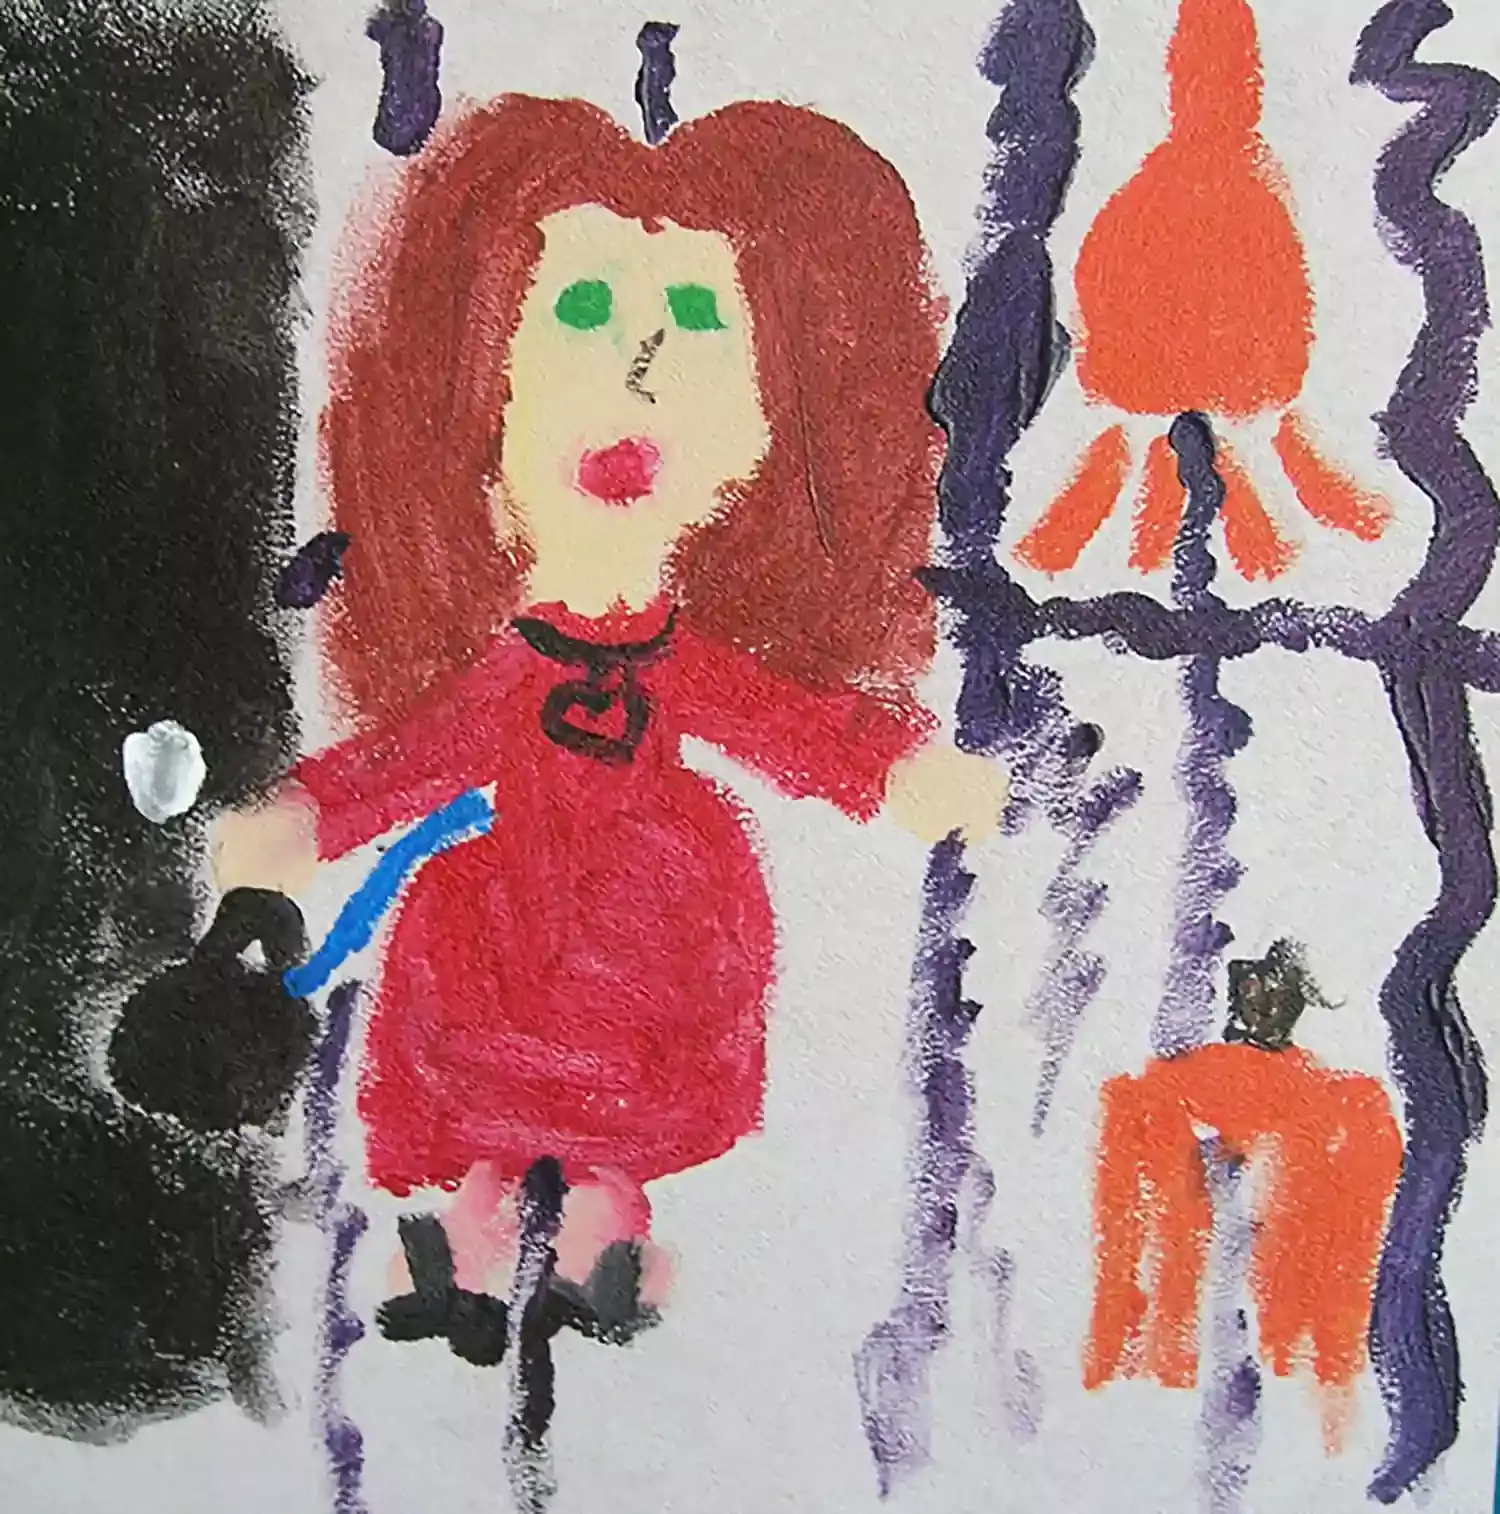 Maleri av en kvinne i rød kjole og langt brunt hår.